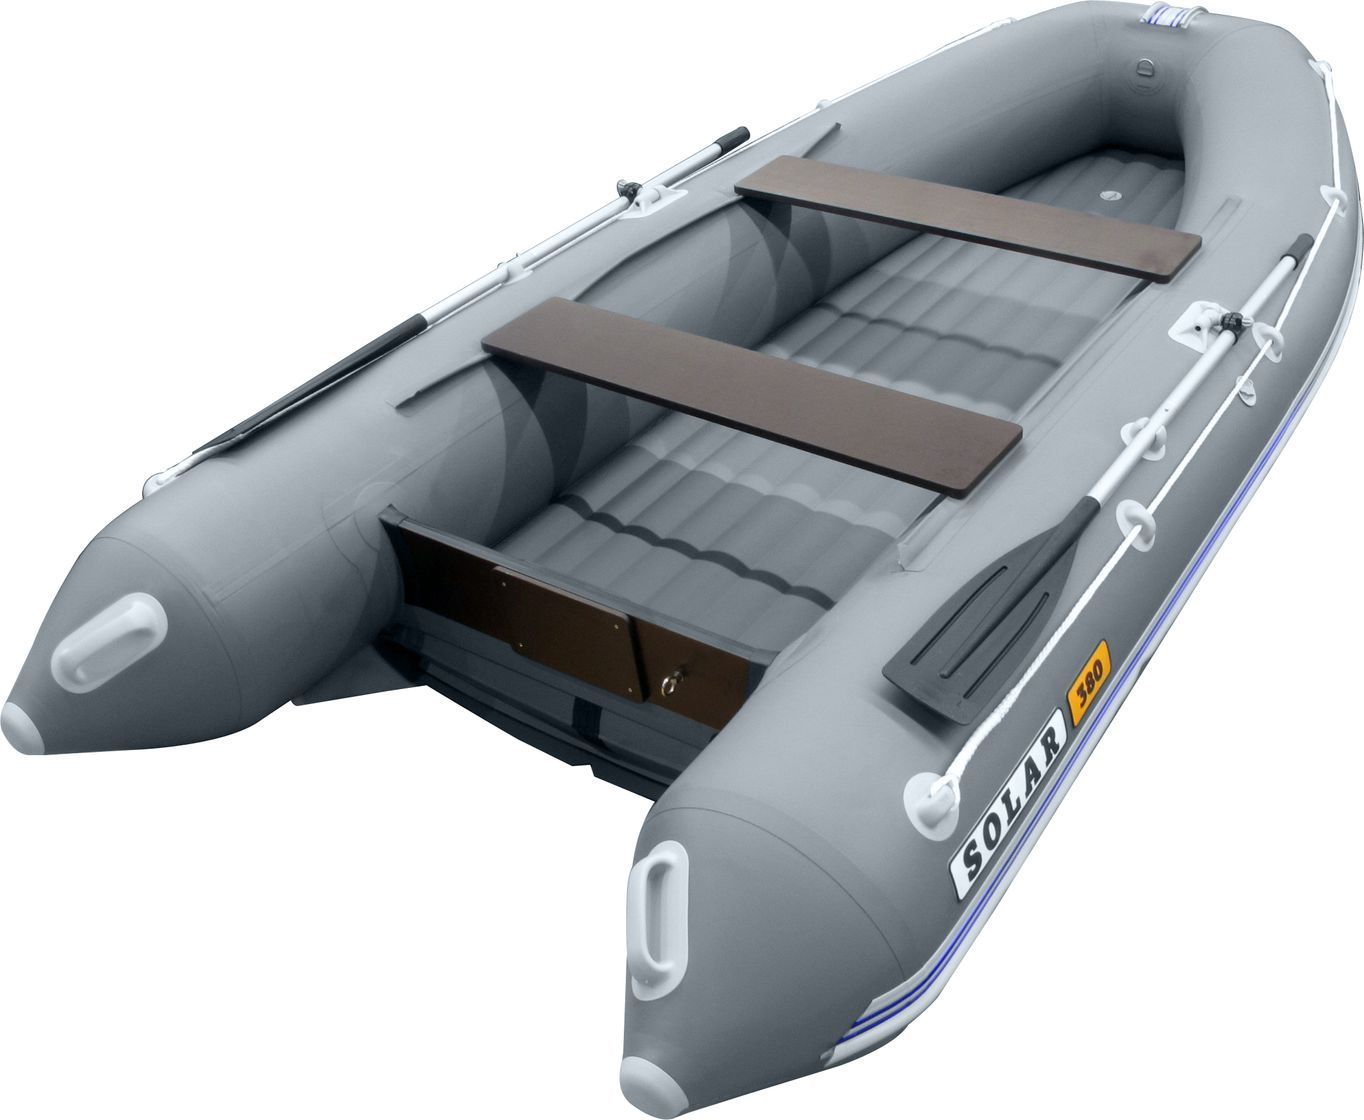 Надувная лодка ПВХ SOLAR-330 К (Оптима), серый SLR330k_opt_grey надувная лодка пвх solar 420 к максима камыш slr420k max cam